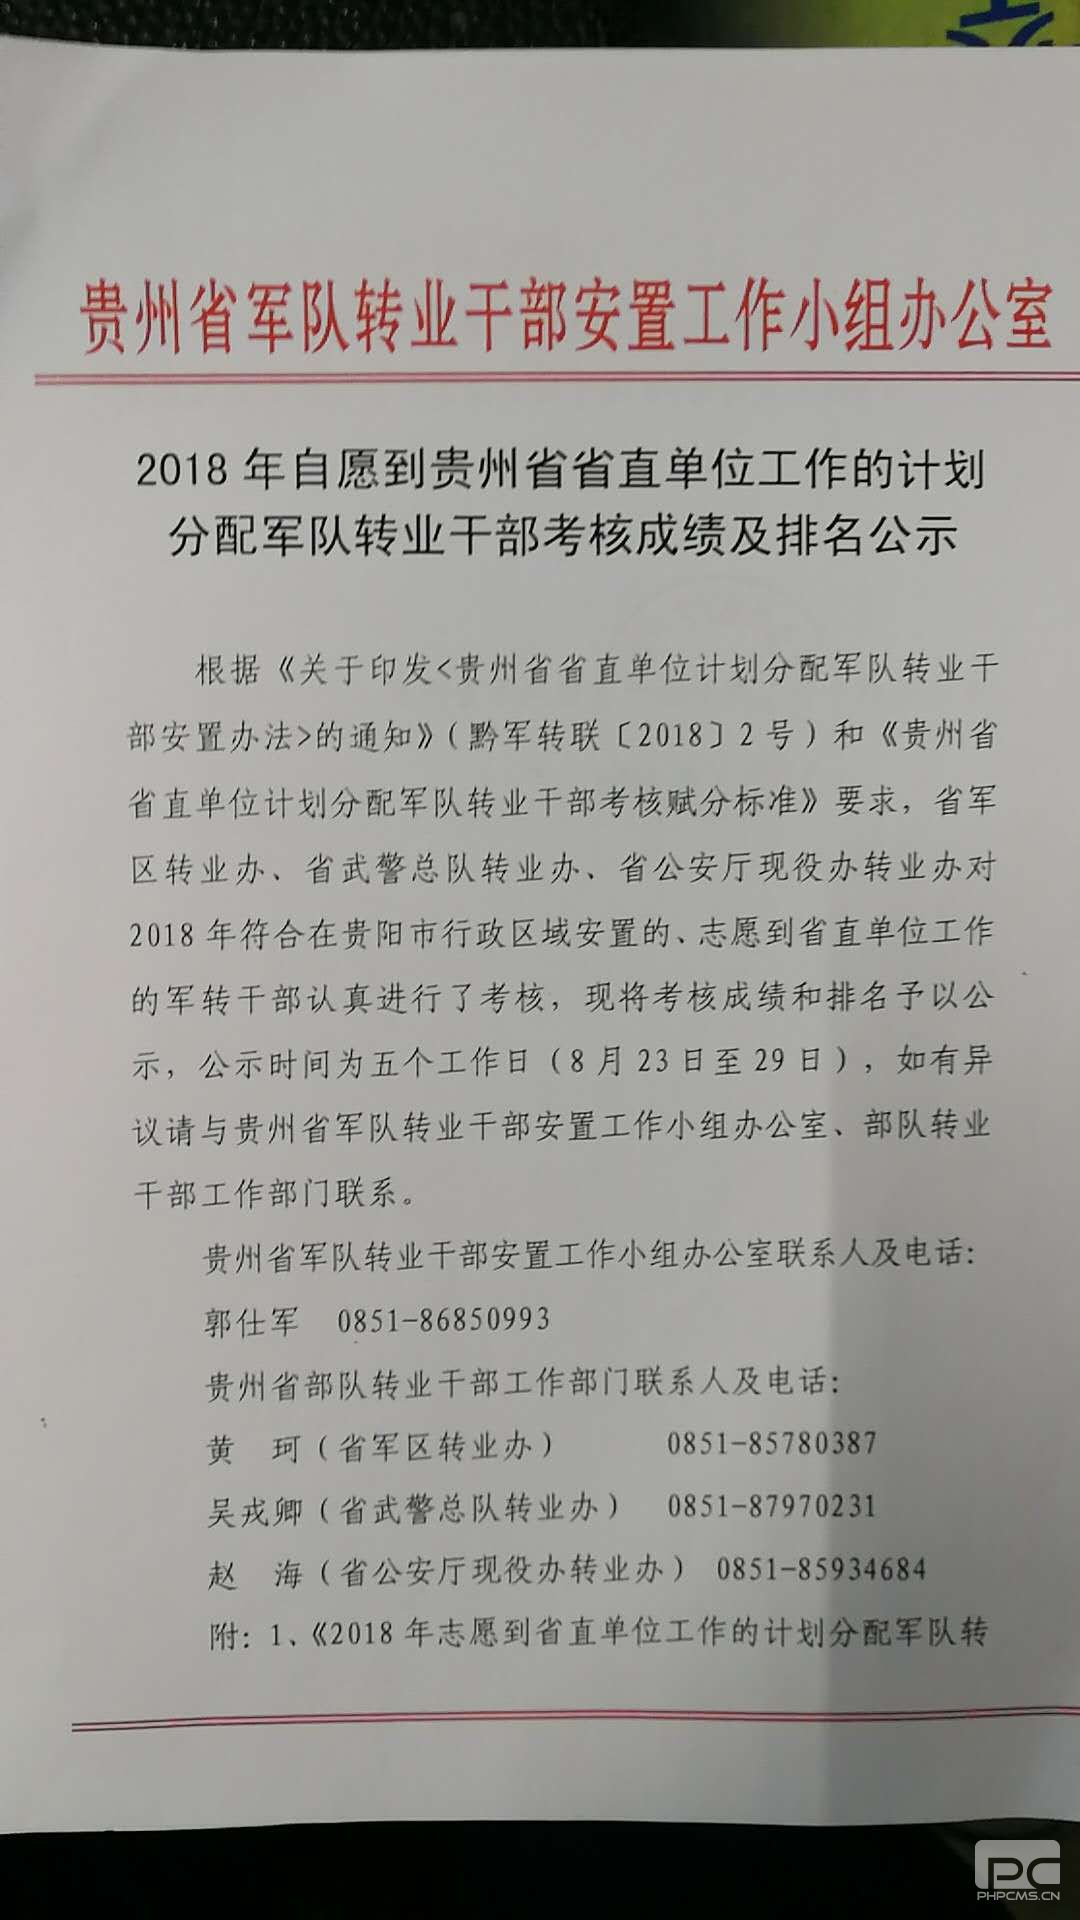 2018年自愿到贵州省直单位工作的计划分配军转干部考核成绩及排名公示.jpg